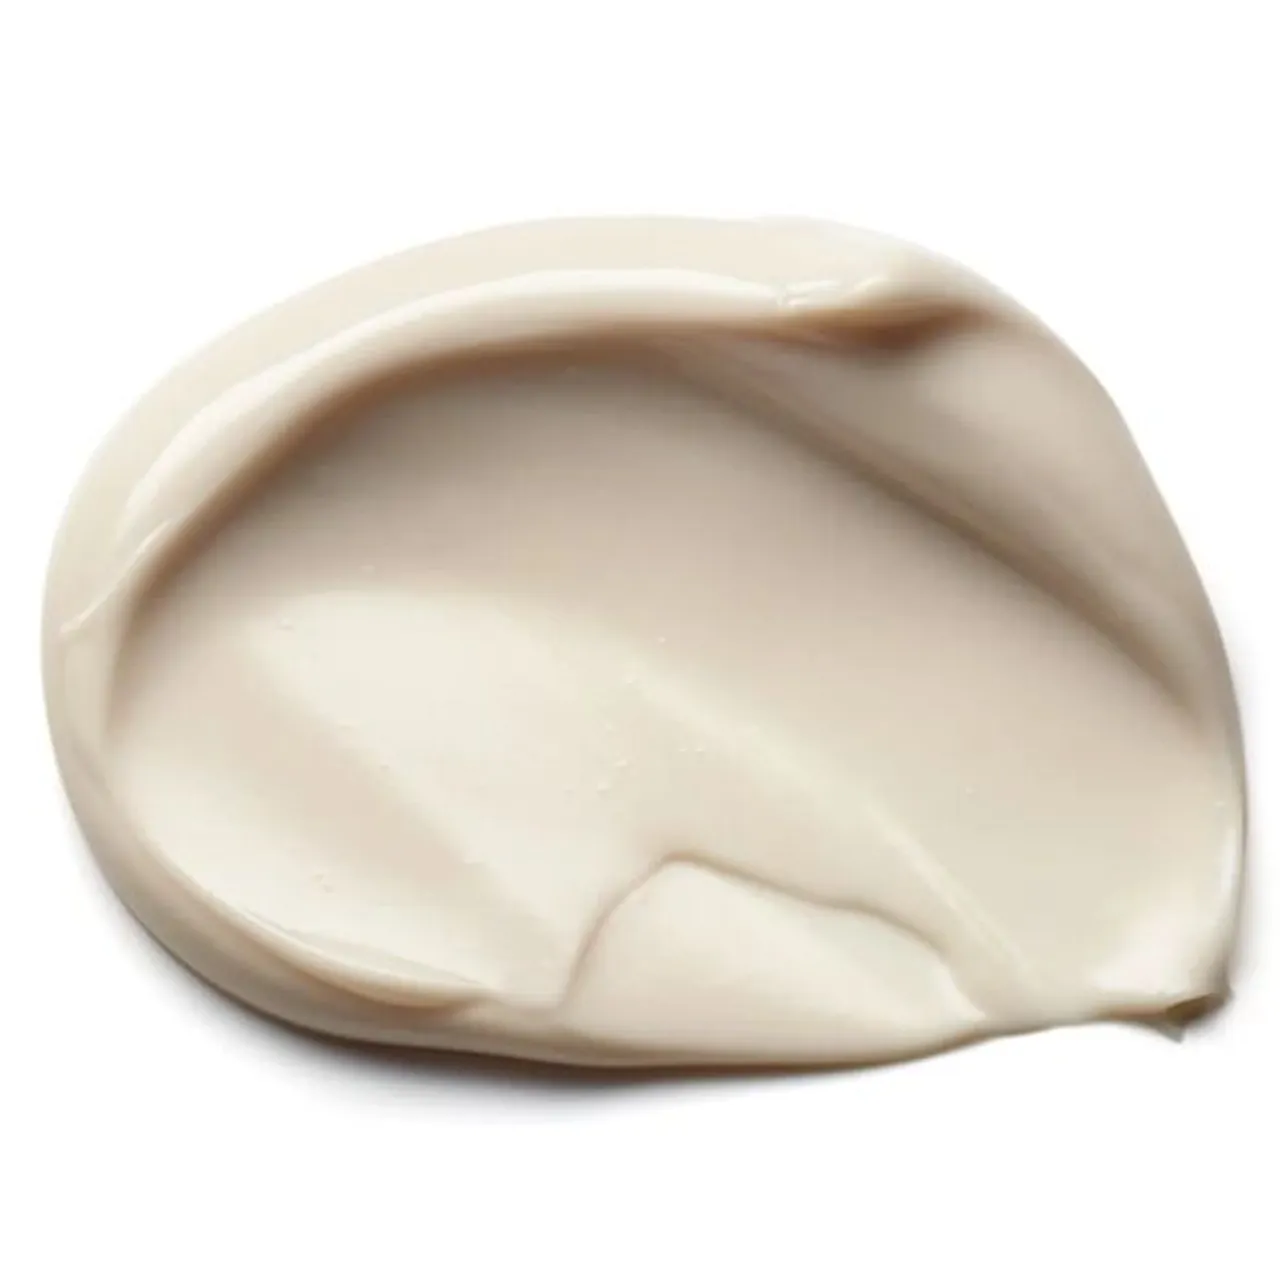 Elemis Frangipani Monoi Body Cream, 200ml - Unisex - Size: 200ml